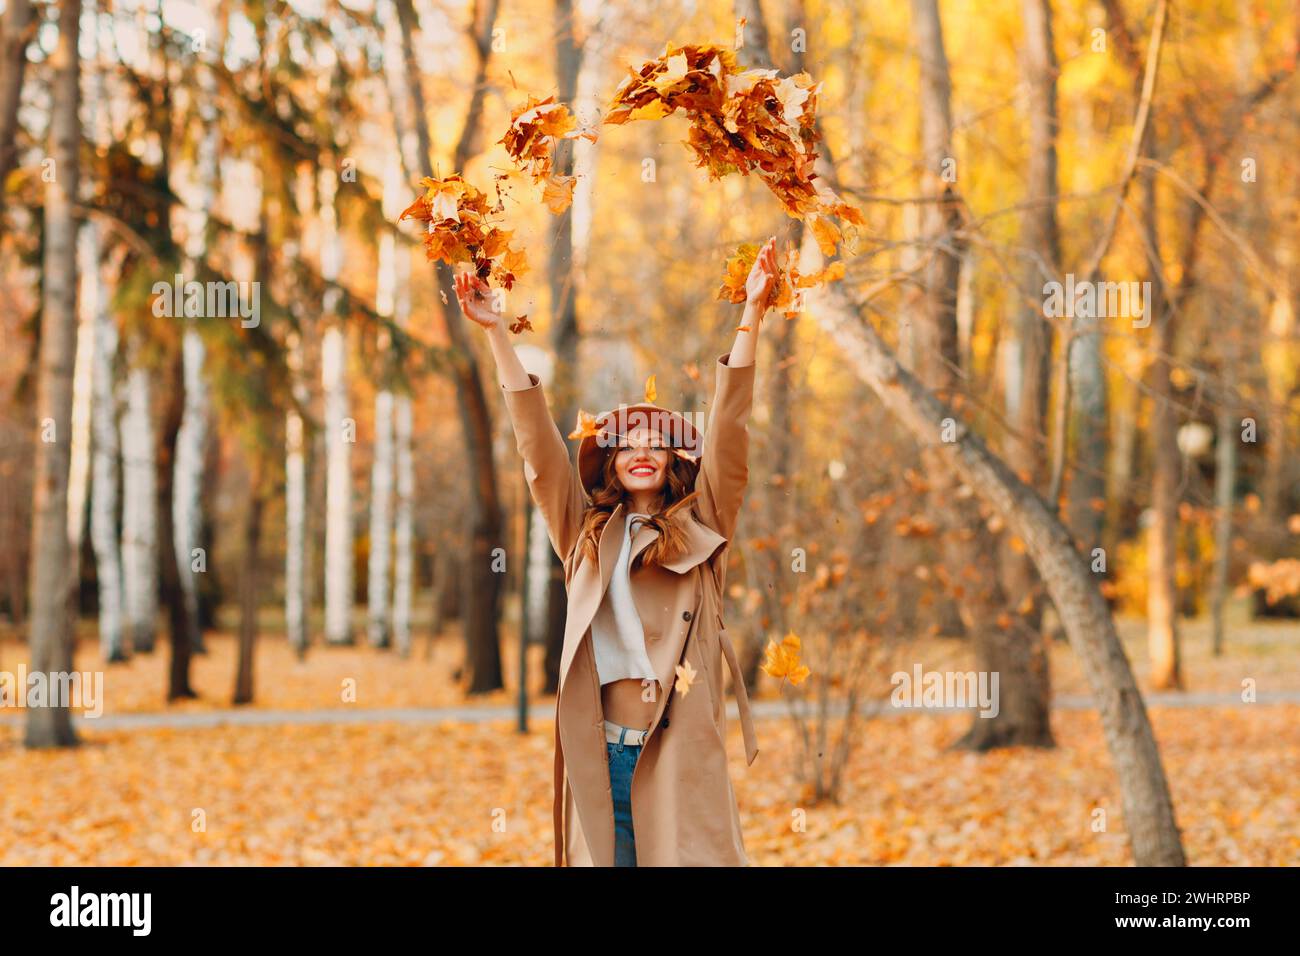 Mädchen im wunderschönen Herbstpark wirft Orangenblätter auf. Herbst-Mode. Stockfoto